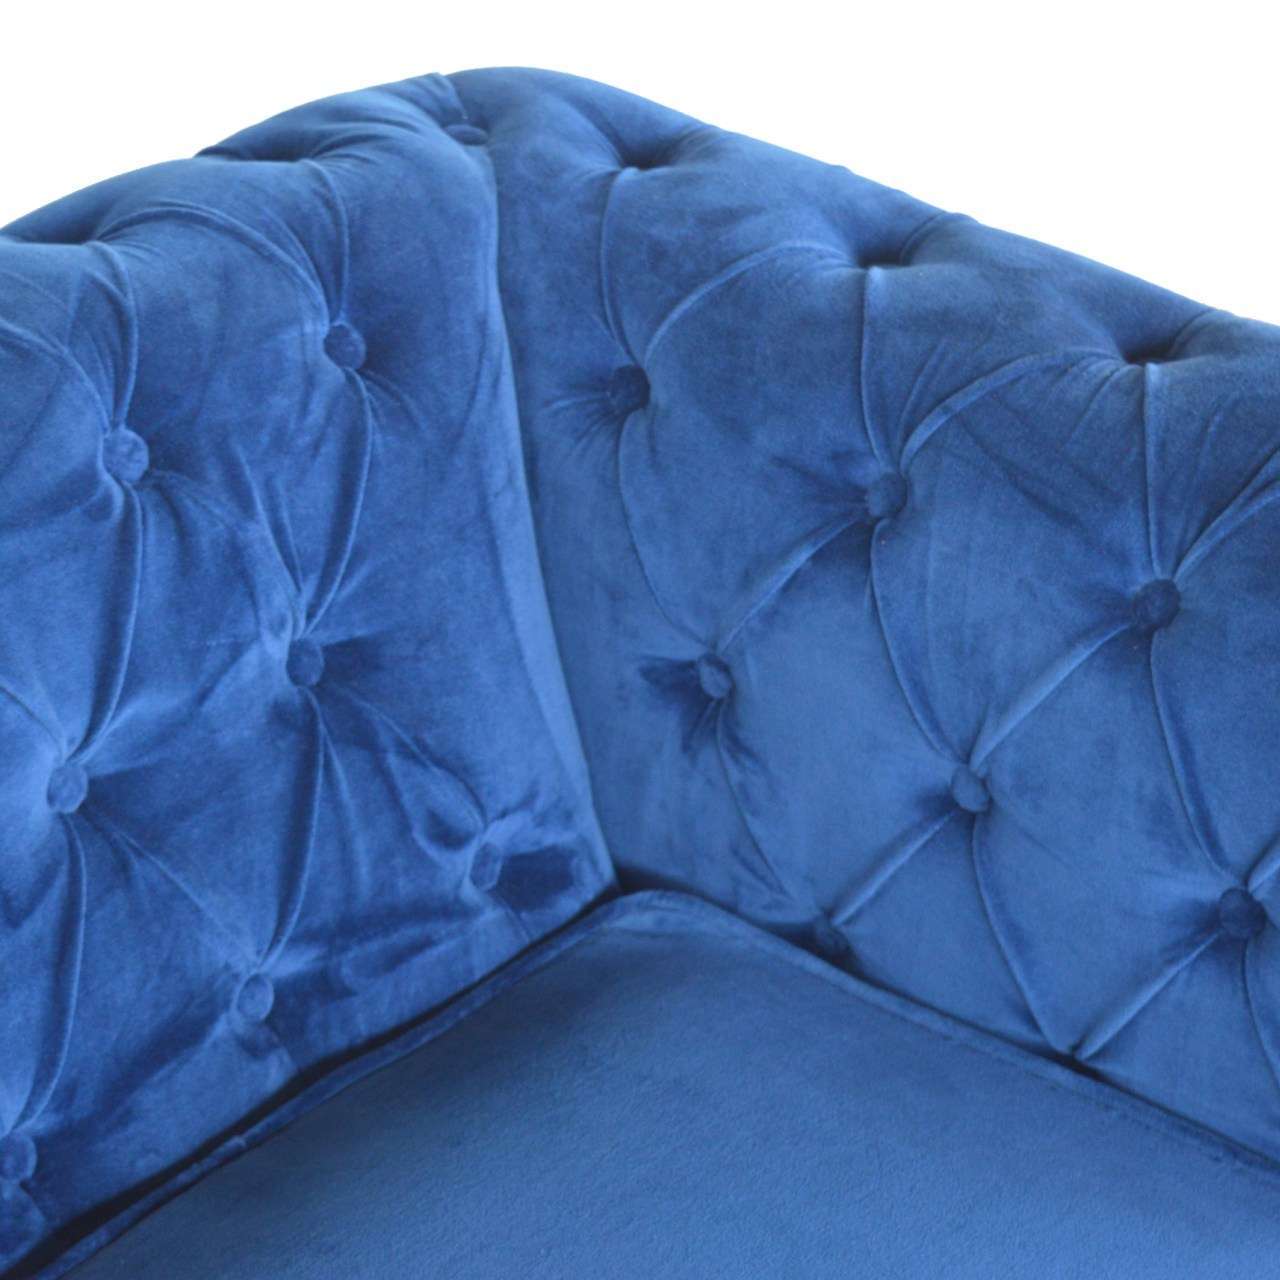 Ashpinoke:Royal Blue Velvet Chesterfield Sofa-Sofas-Artisan